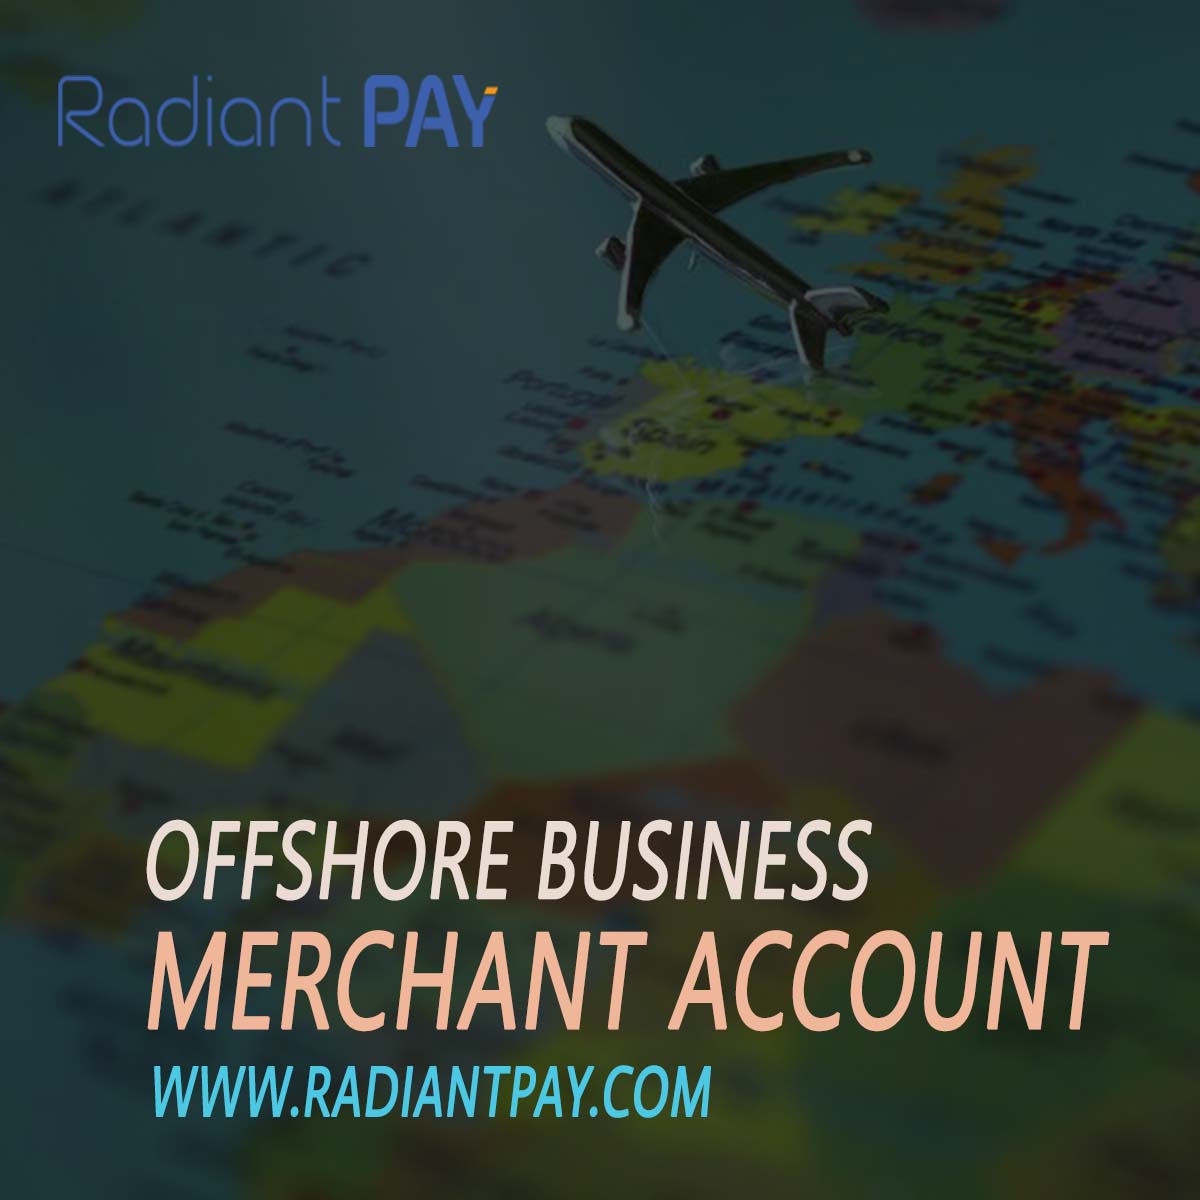 Offshore merchant account 